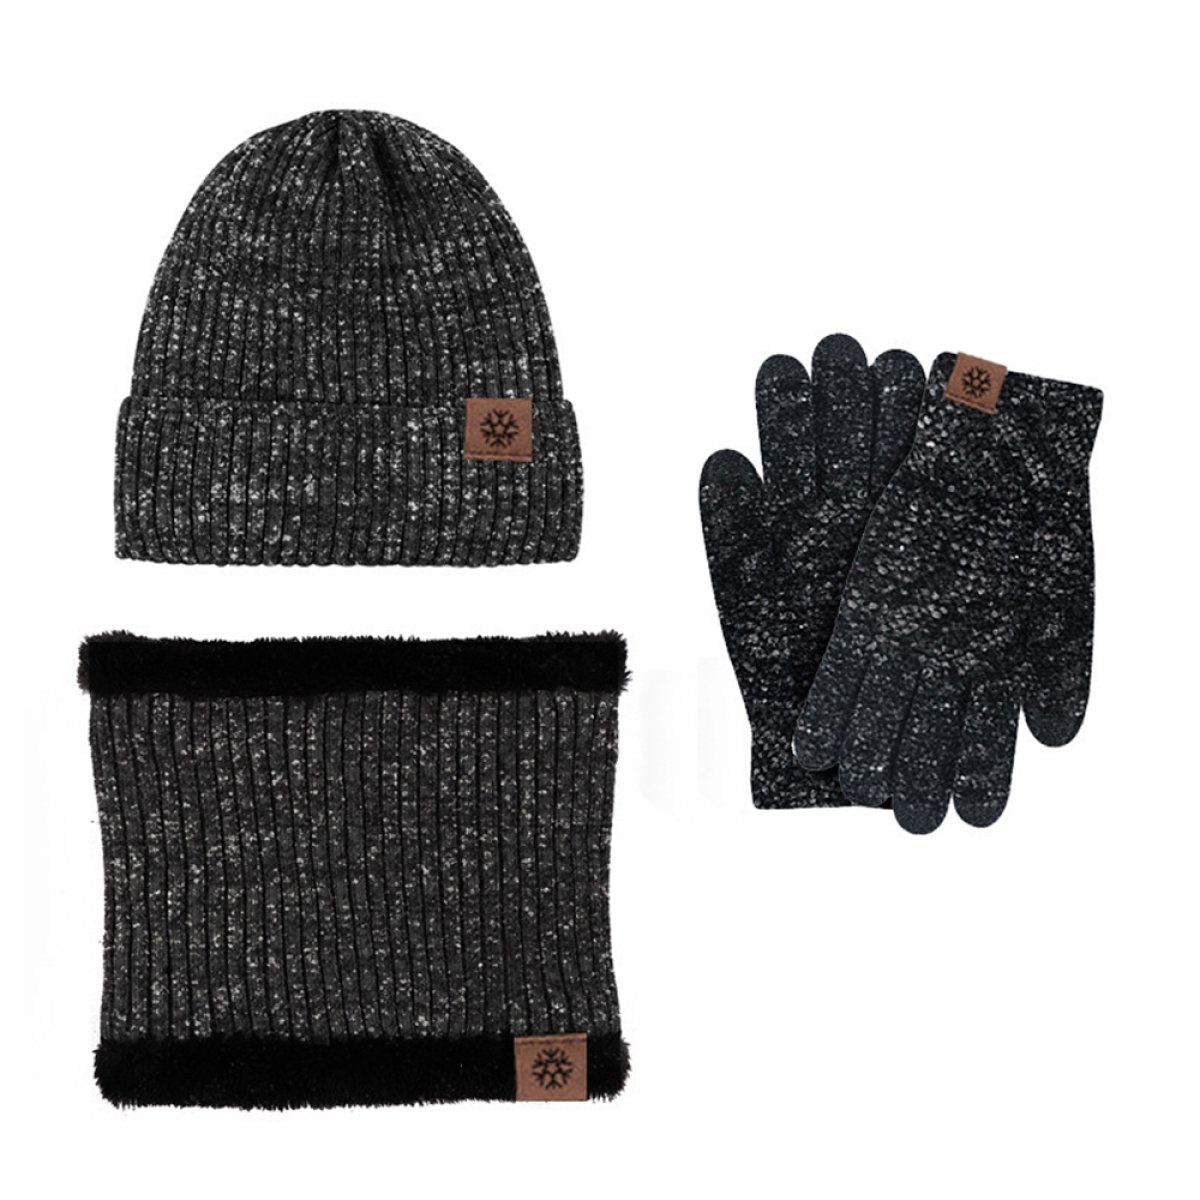 Warm & Strickmütze Mütze Schal Handschuh Schal Set für Wintermütze Universal schwarz+grau ZmdecQna und